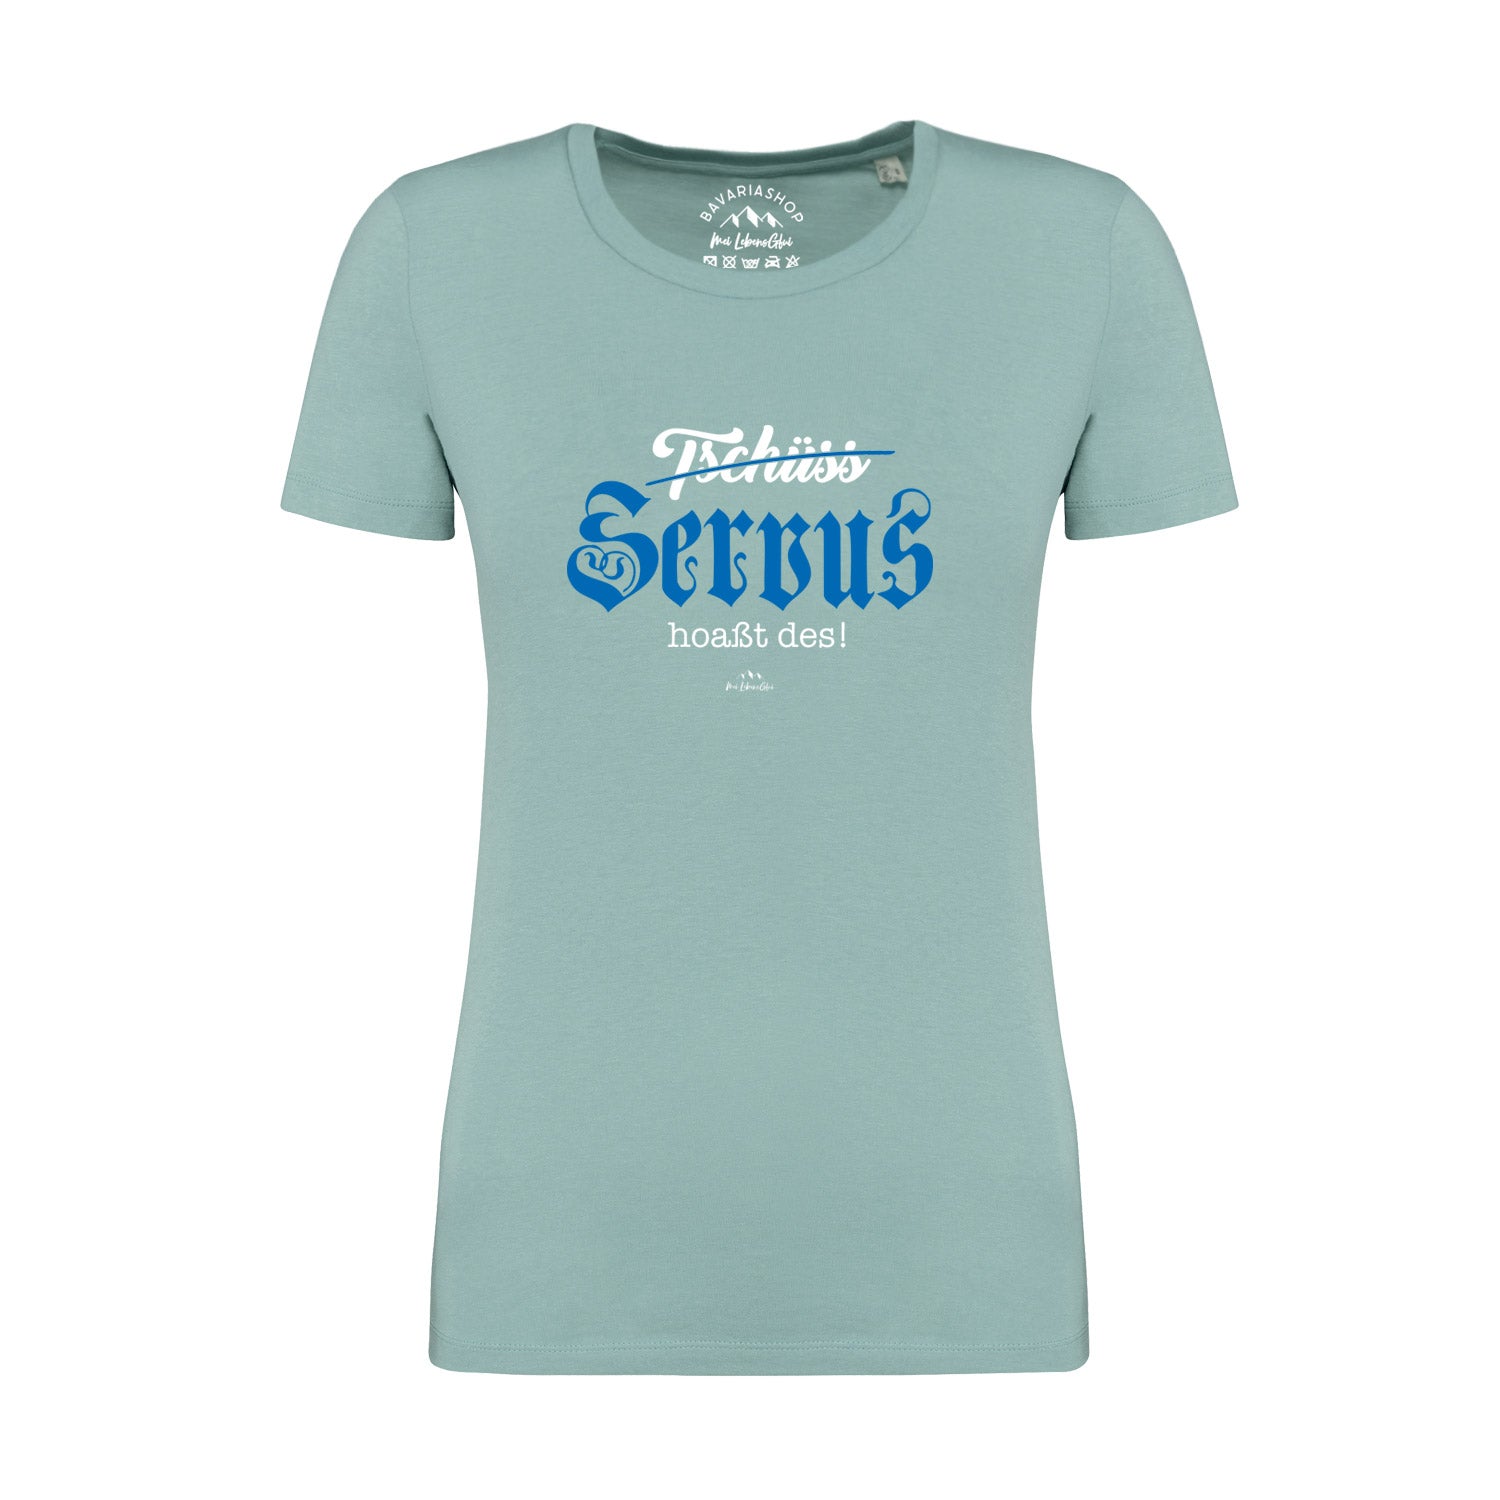 Damen T-Shirt "Servus hoaßt des"